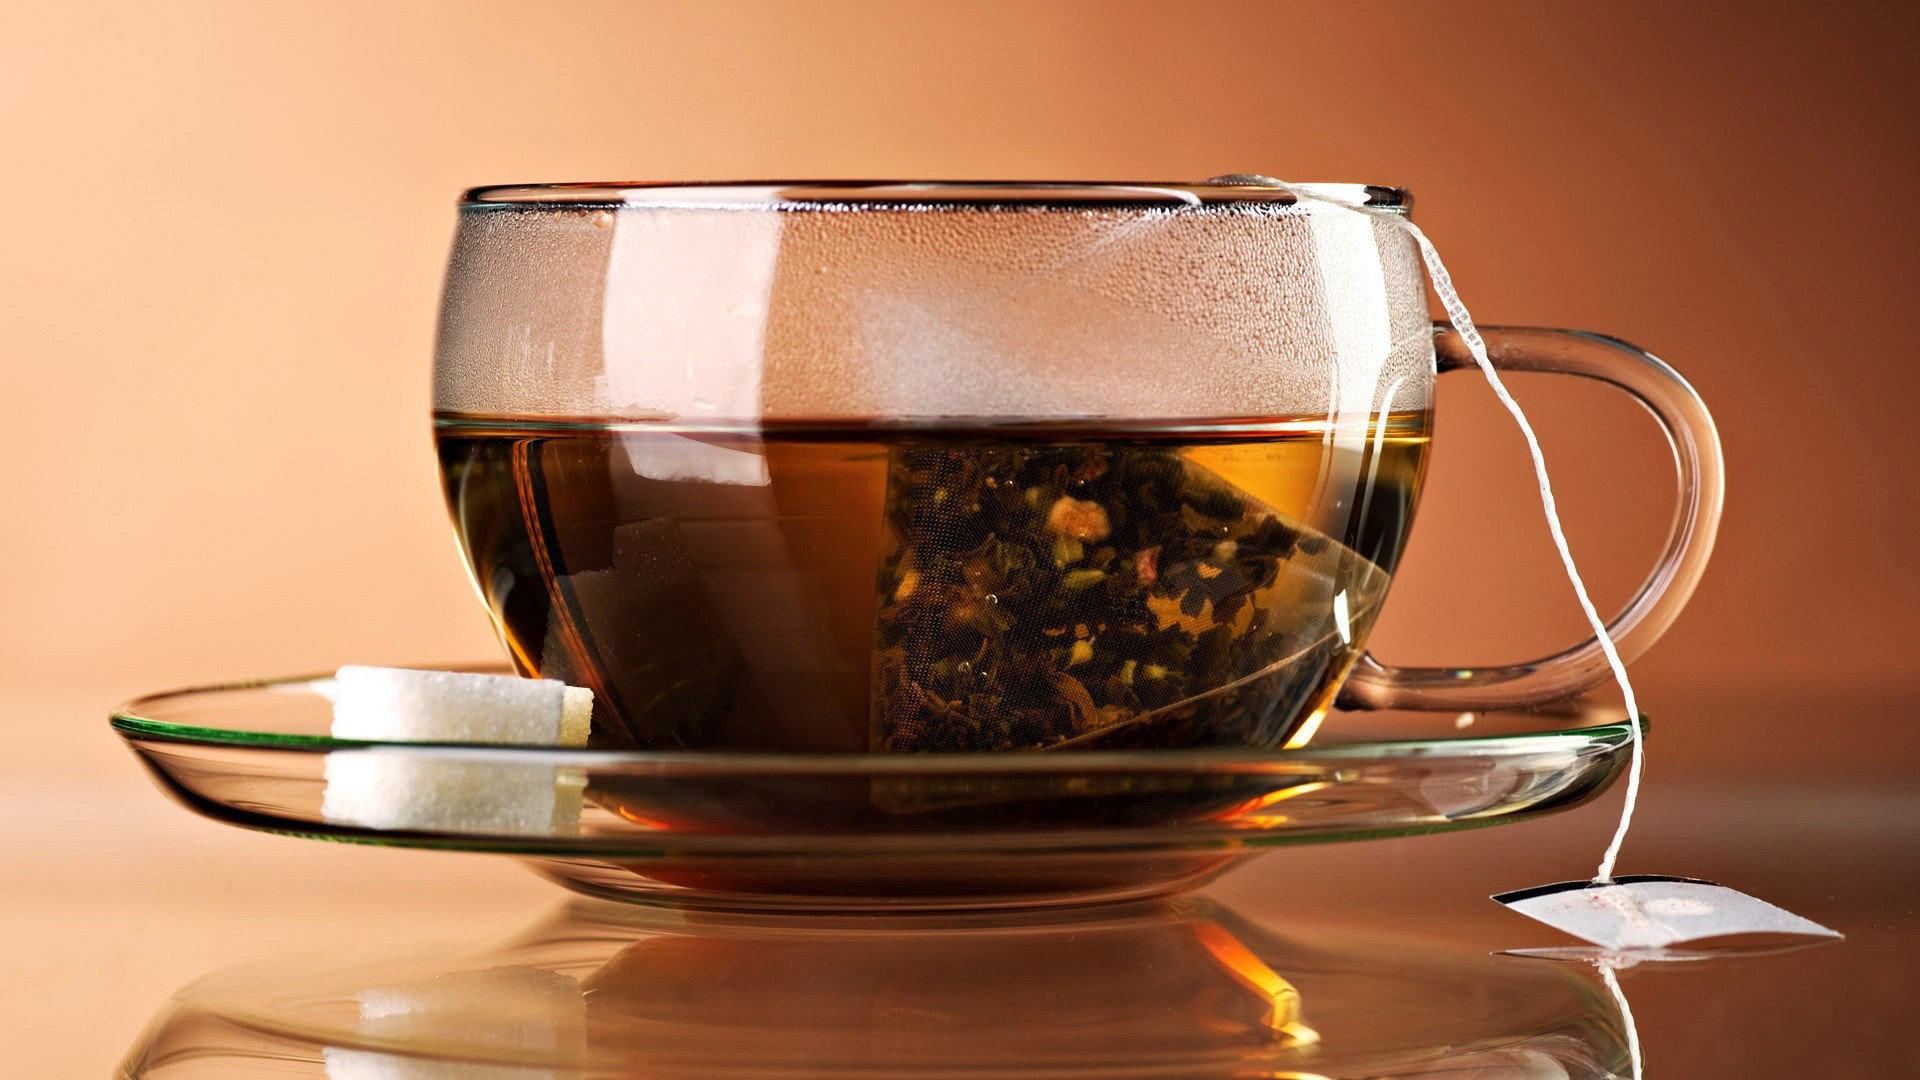 papel tapiz de té,beber,té de hierbas chino,té earl grey,té,té de cebada tostada